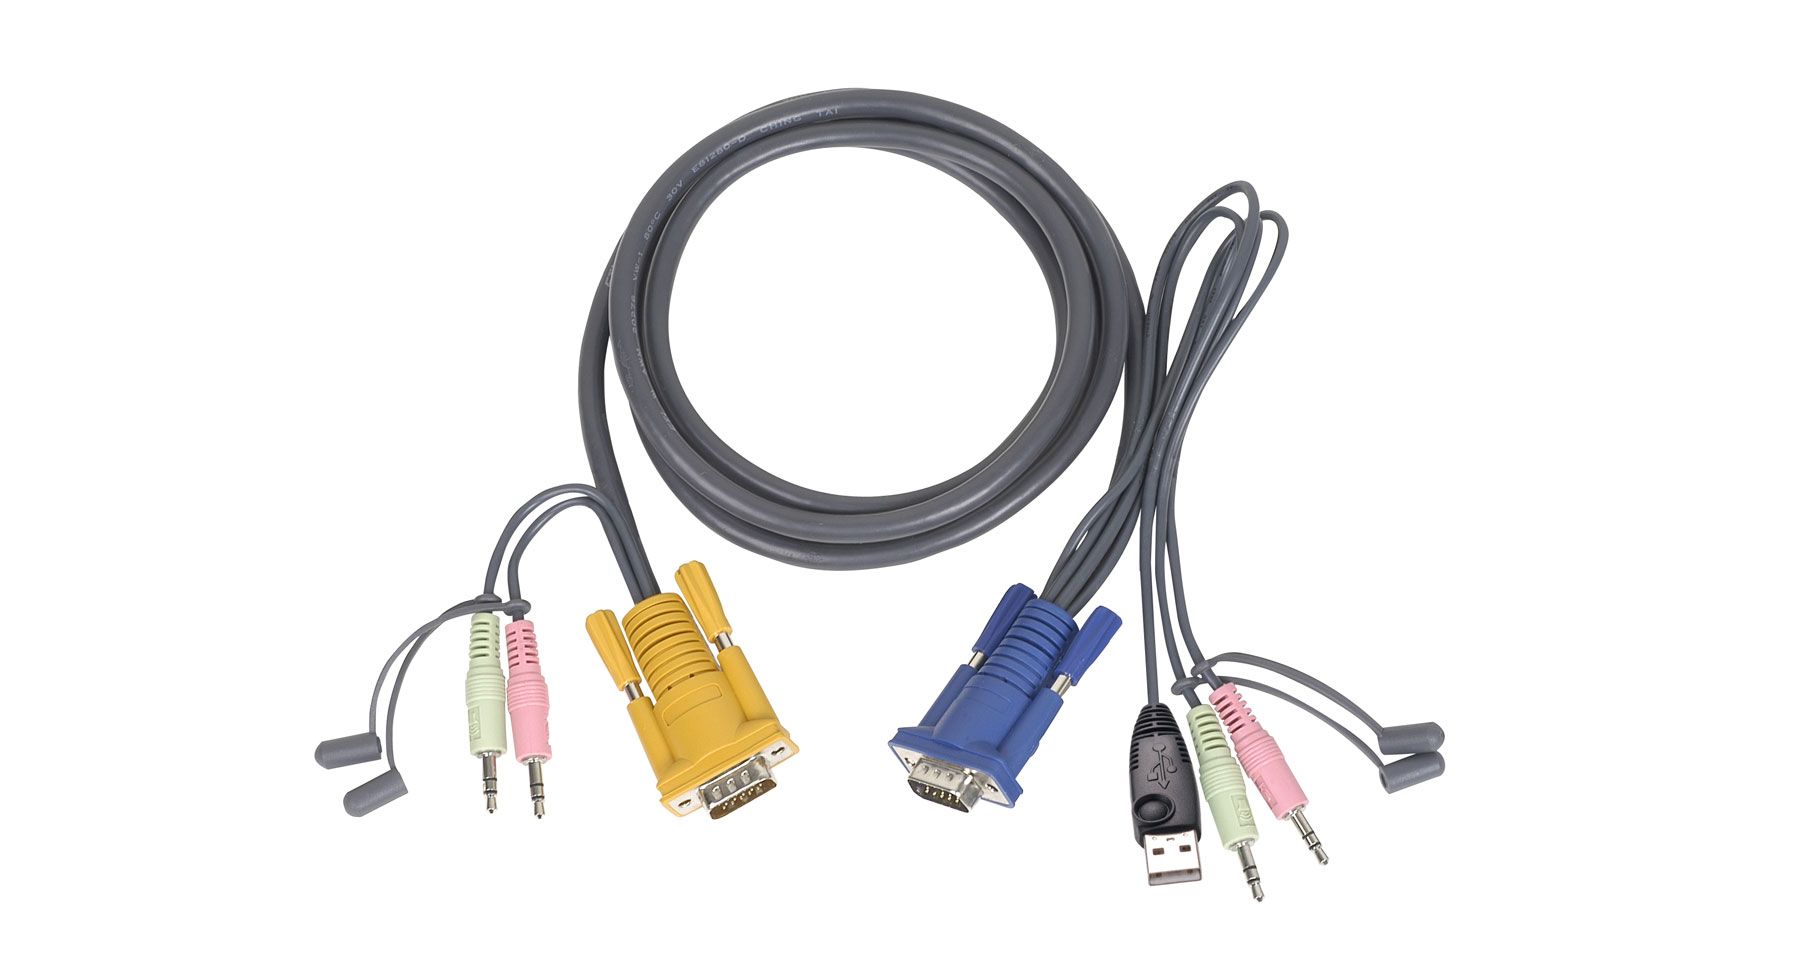 15' USB KVM Cable